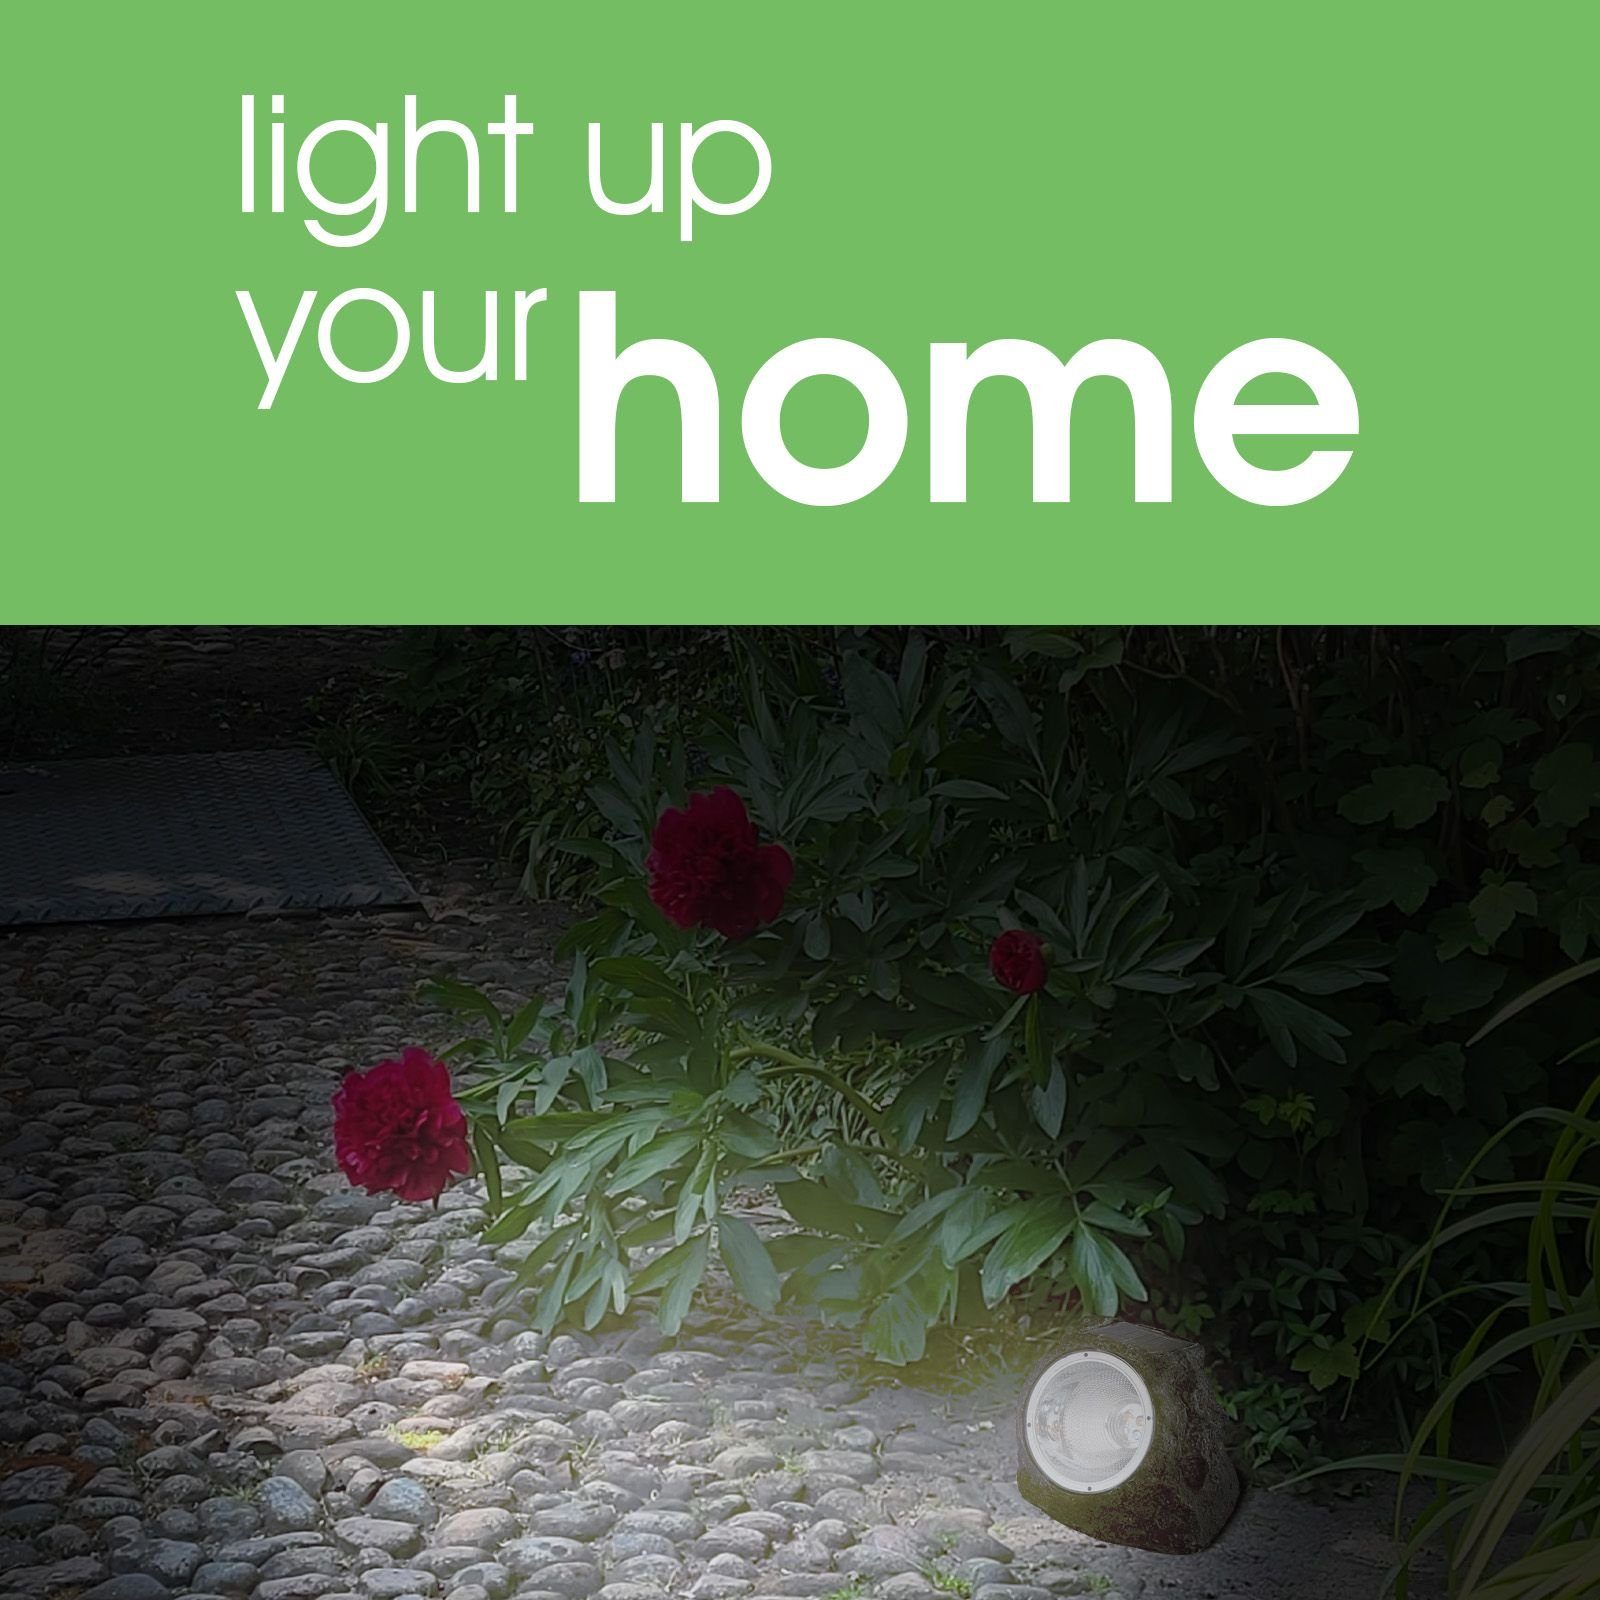 Garten Deko Solarlampe Optik Stein Set Solarleuchte 2er Außen Solarlampe bmf-versand LED